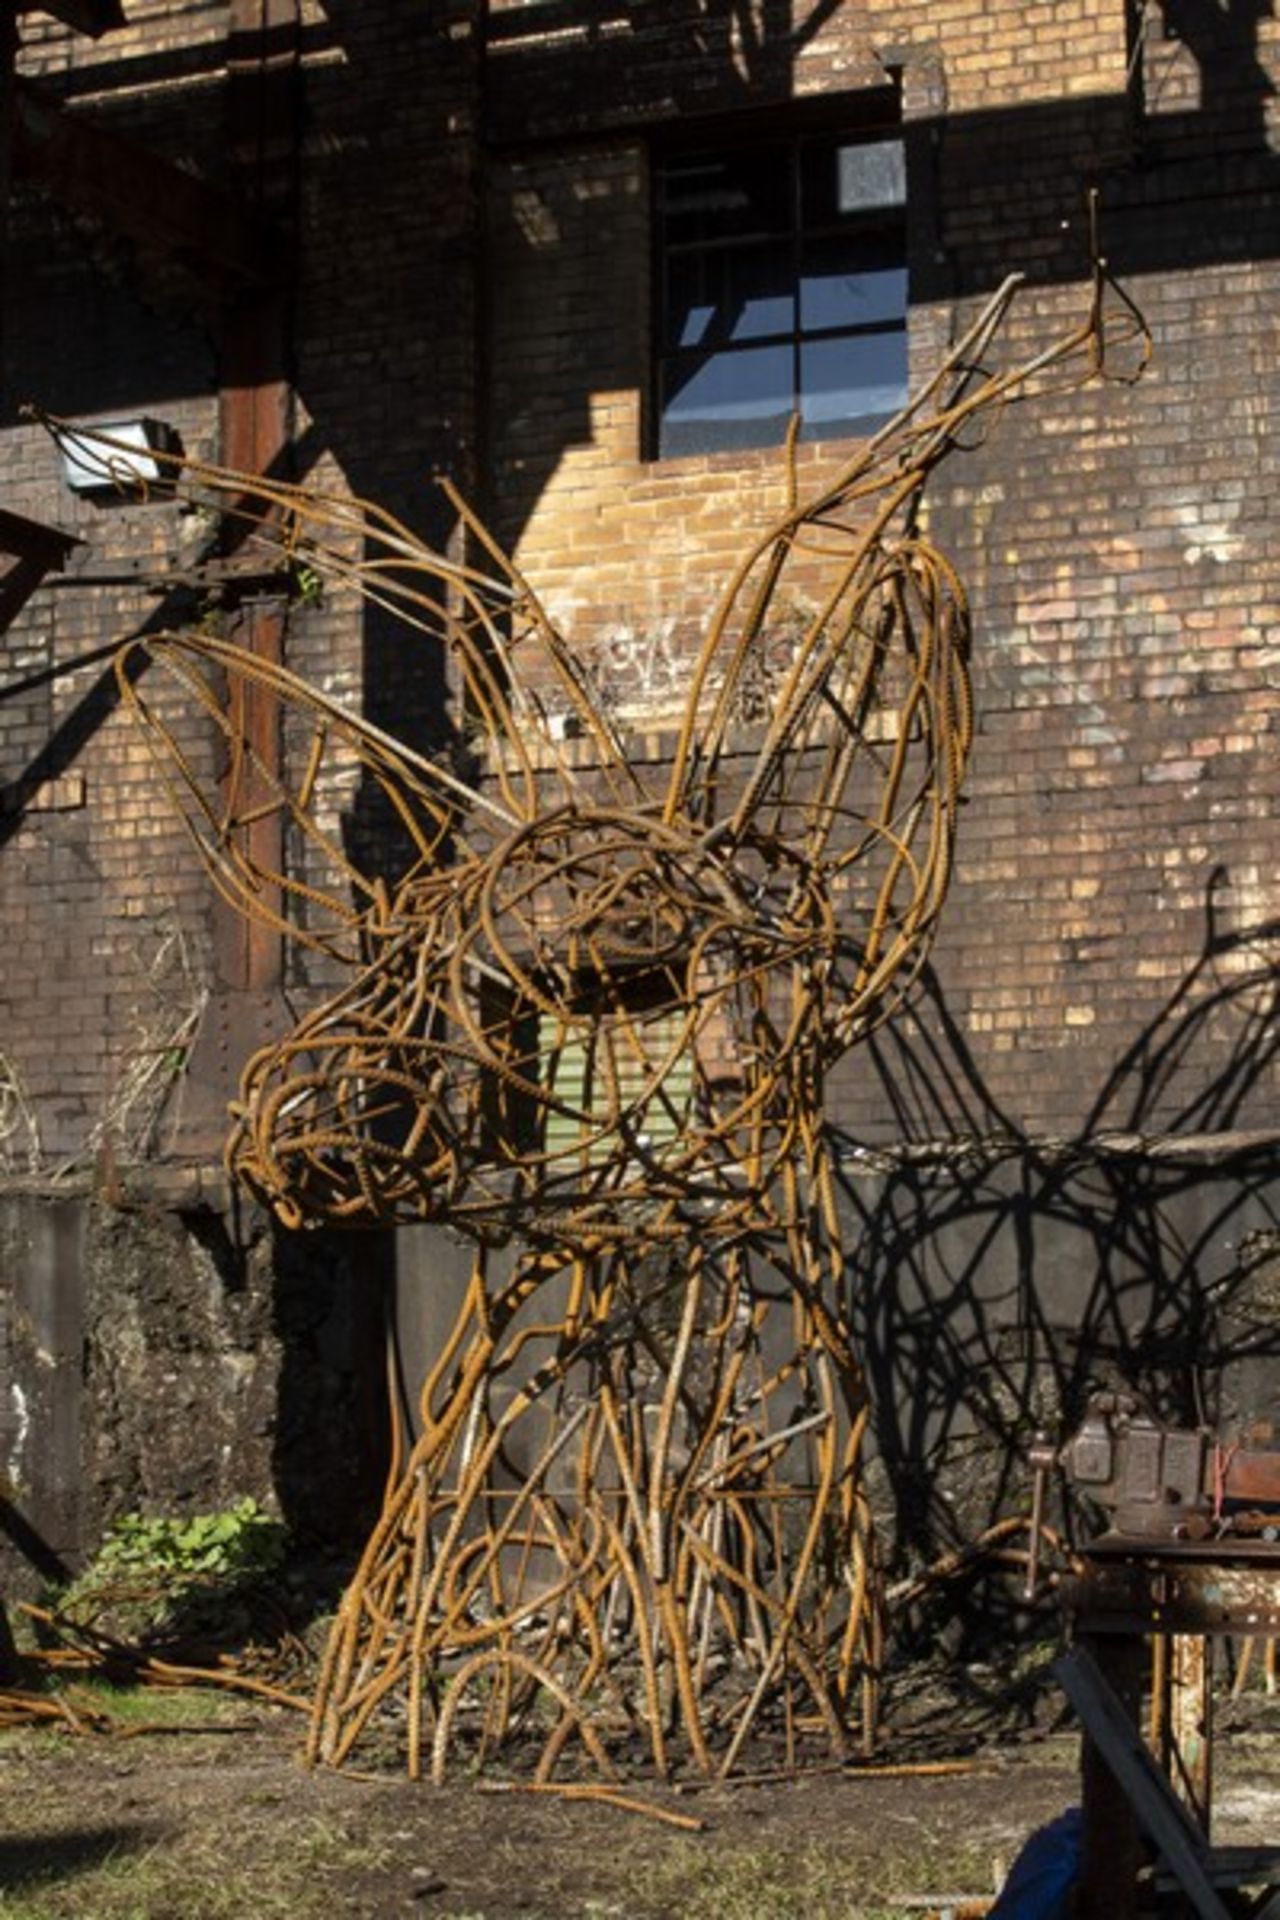 Custom Welded Deerhead Sculpture - 14' Tall Rebar Deer - Estimated Value $12,000 +++ - Image 2 of 8